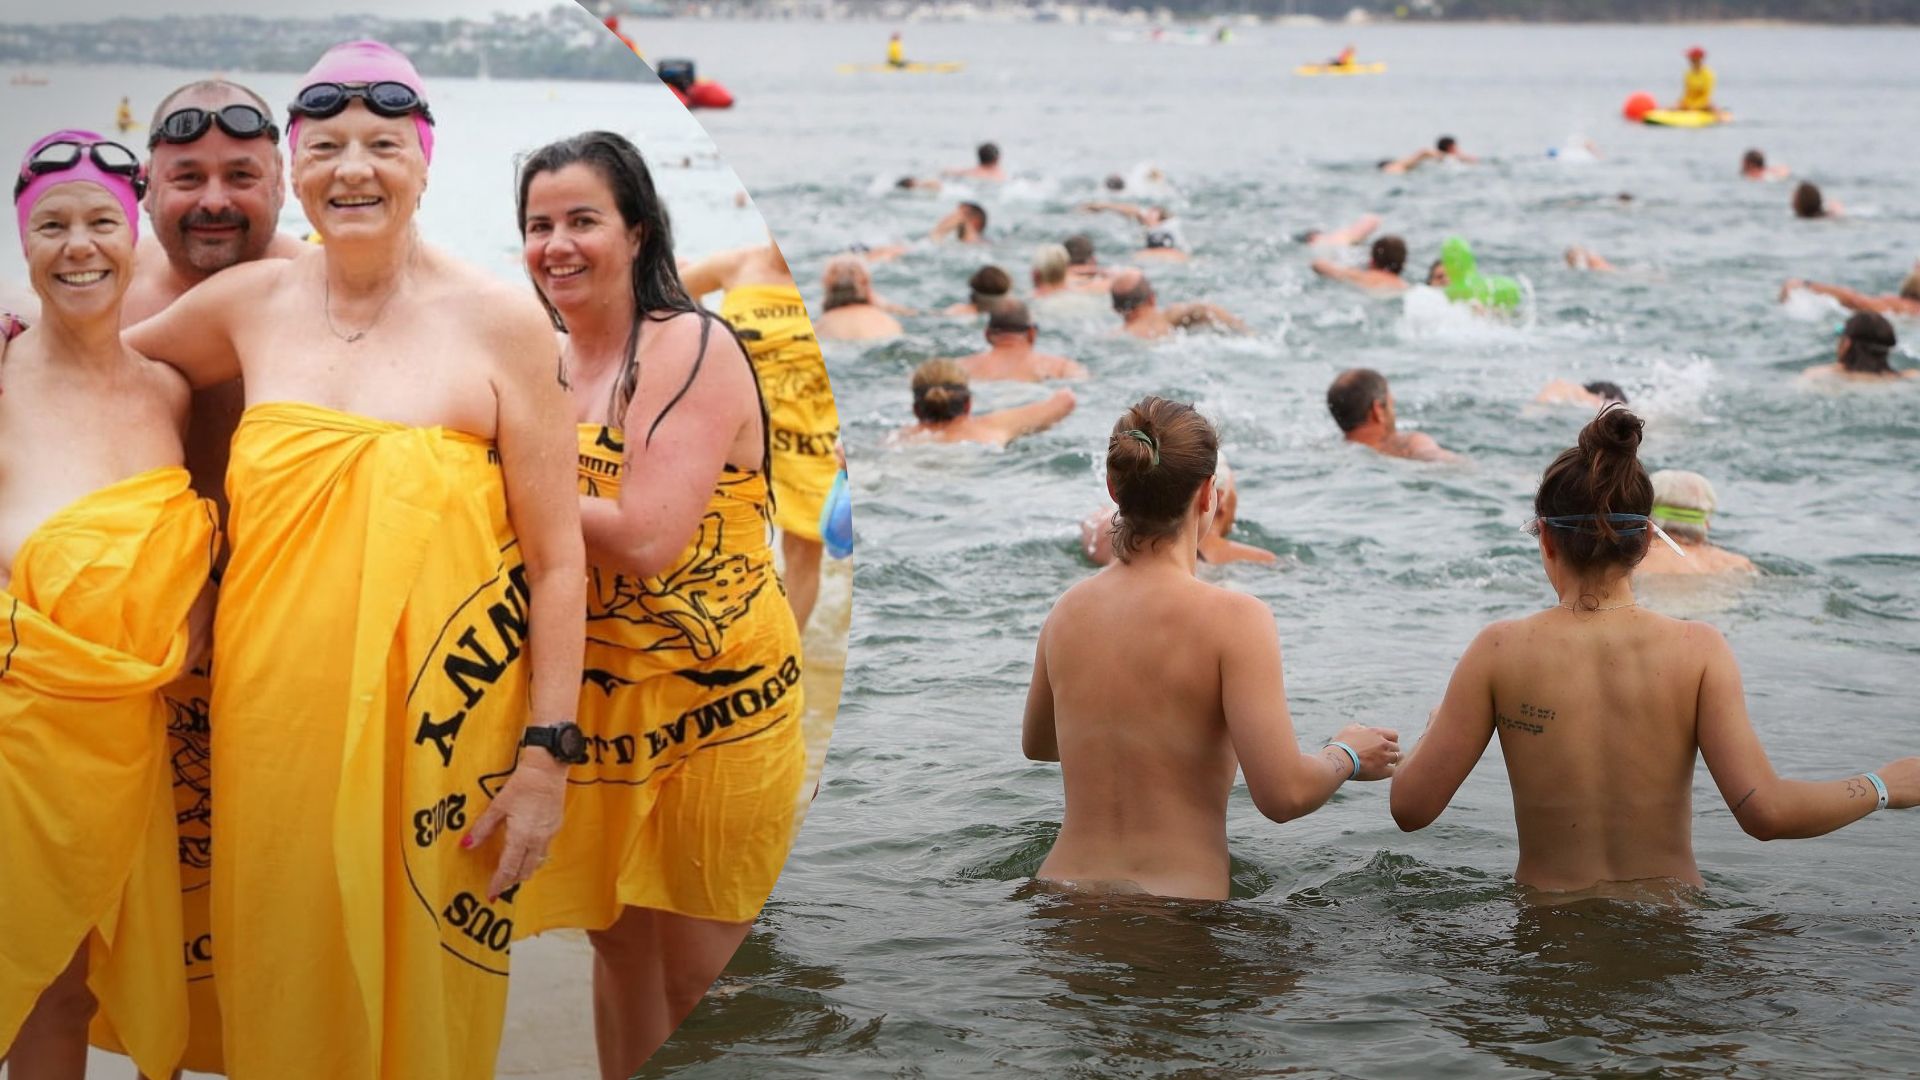 Более 1000 австралийцев плавали голышом - для чего они это сделали, что за акция